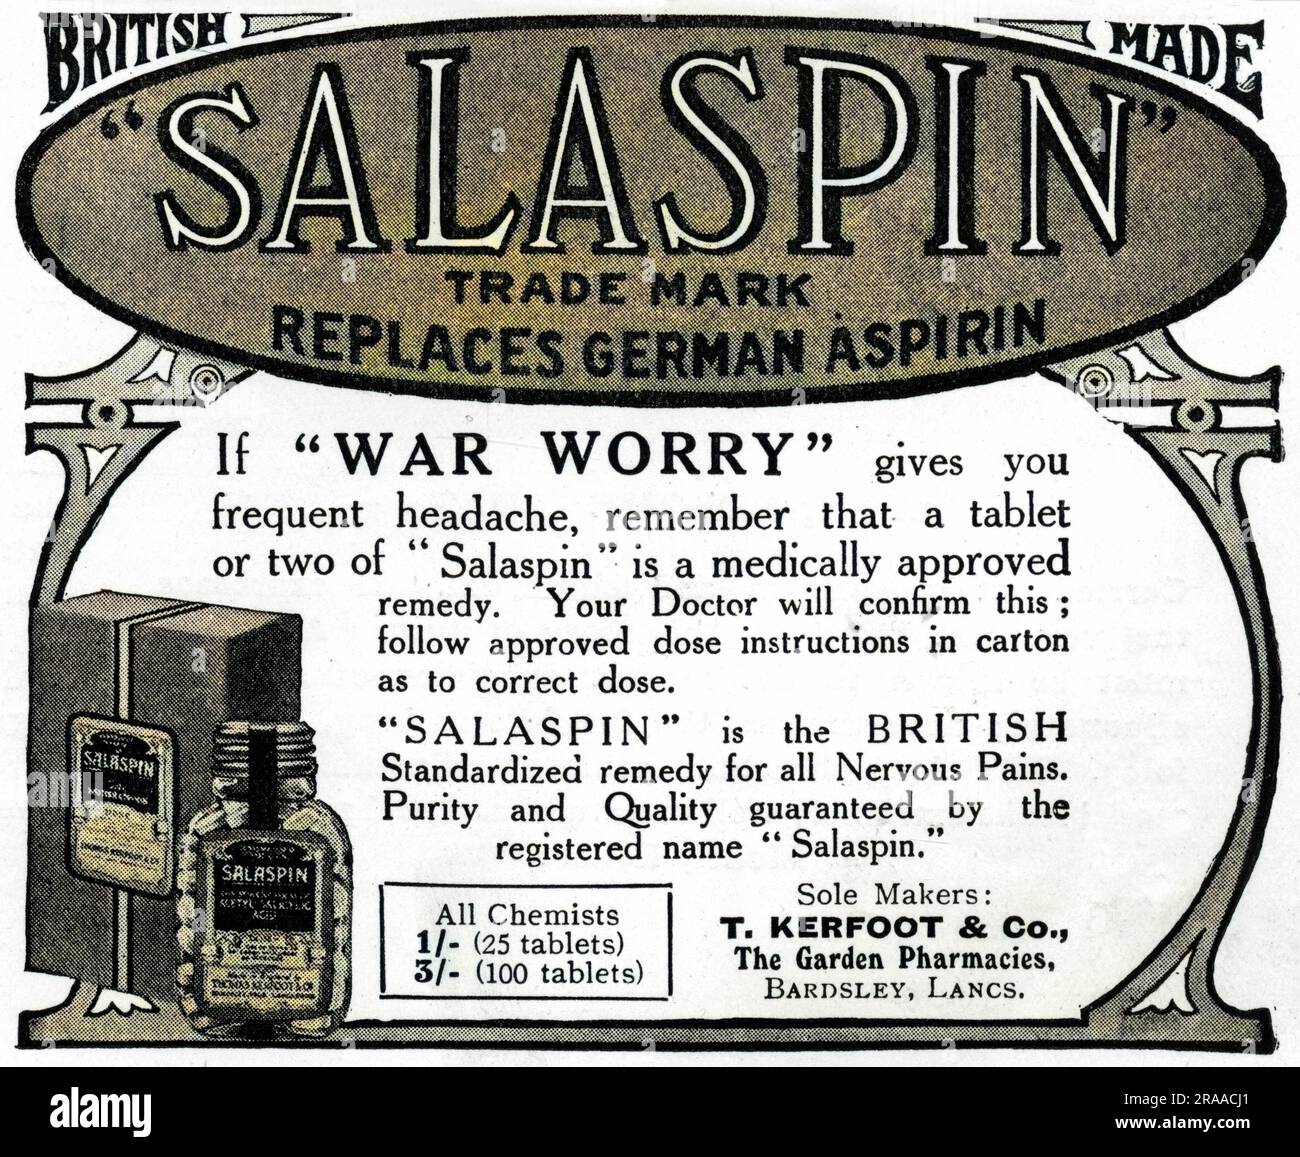 Une publicité pour SalaPIN, un Britannique a fait un remède contre les maux de tête, avec un ou deux comprimés capables de soulager les maux de tête causés par l'inquiétude de guerre. La publicité indique clairement qu'elle remplace l'aspirine allemande. Date: 1917 Banque D'Images